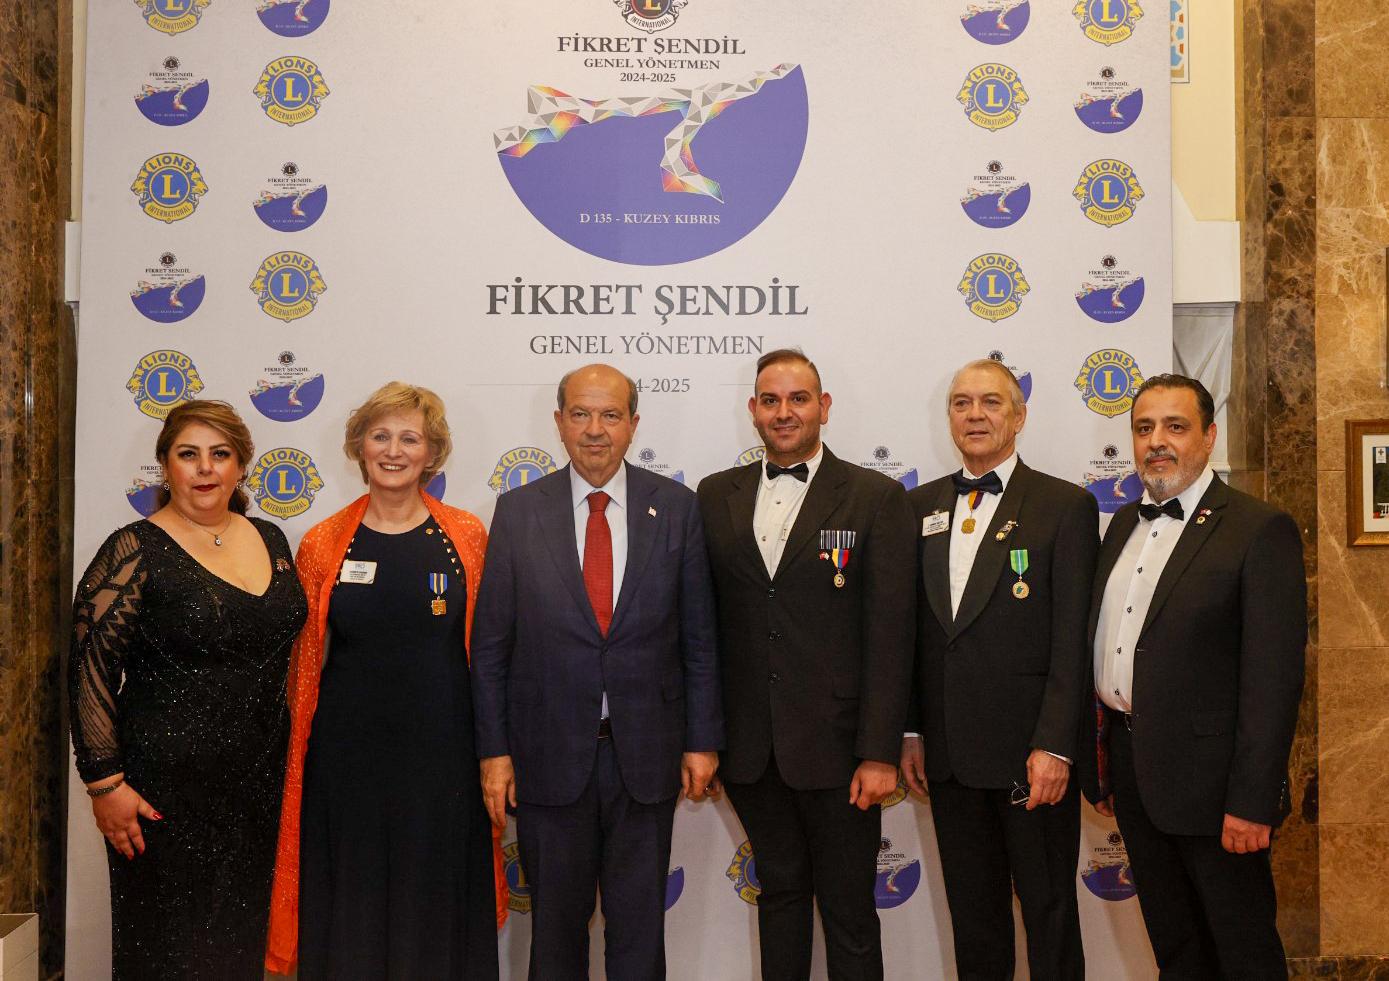 Cumhurbaşkanı Tatar: “Biz bu onuru kazandık, burada Kıbrıs Türk halkının mücadelesi var”